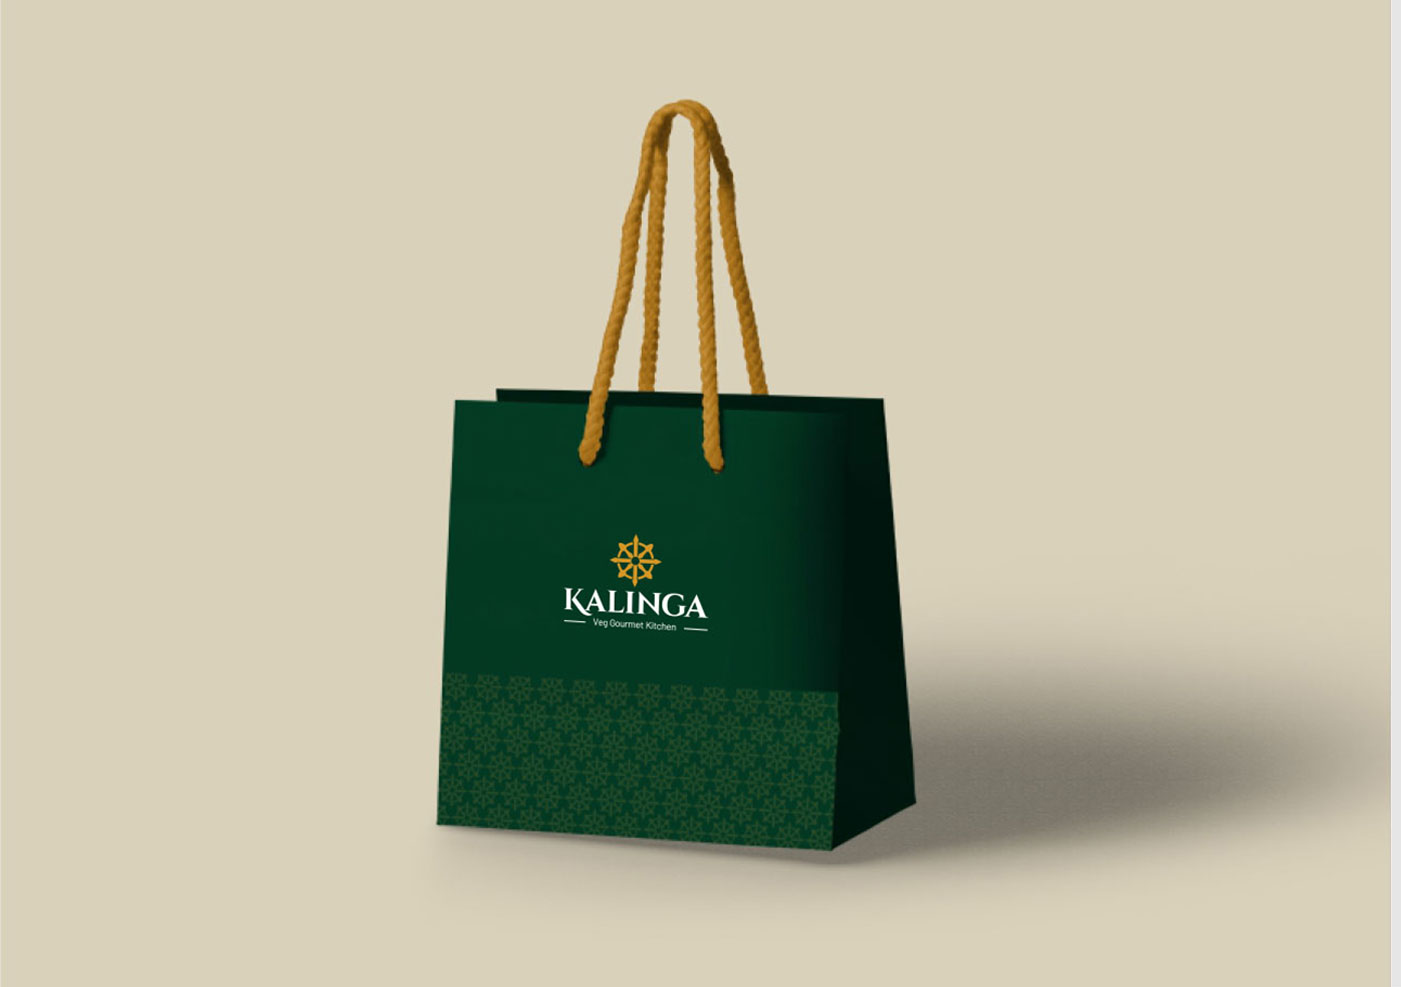 Kalinga carry bag design